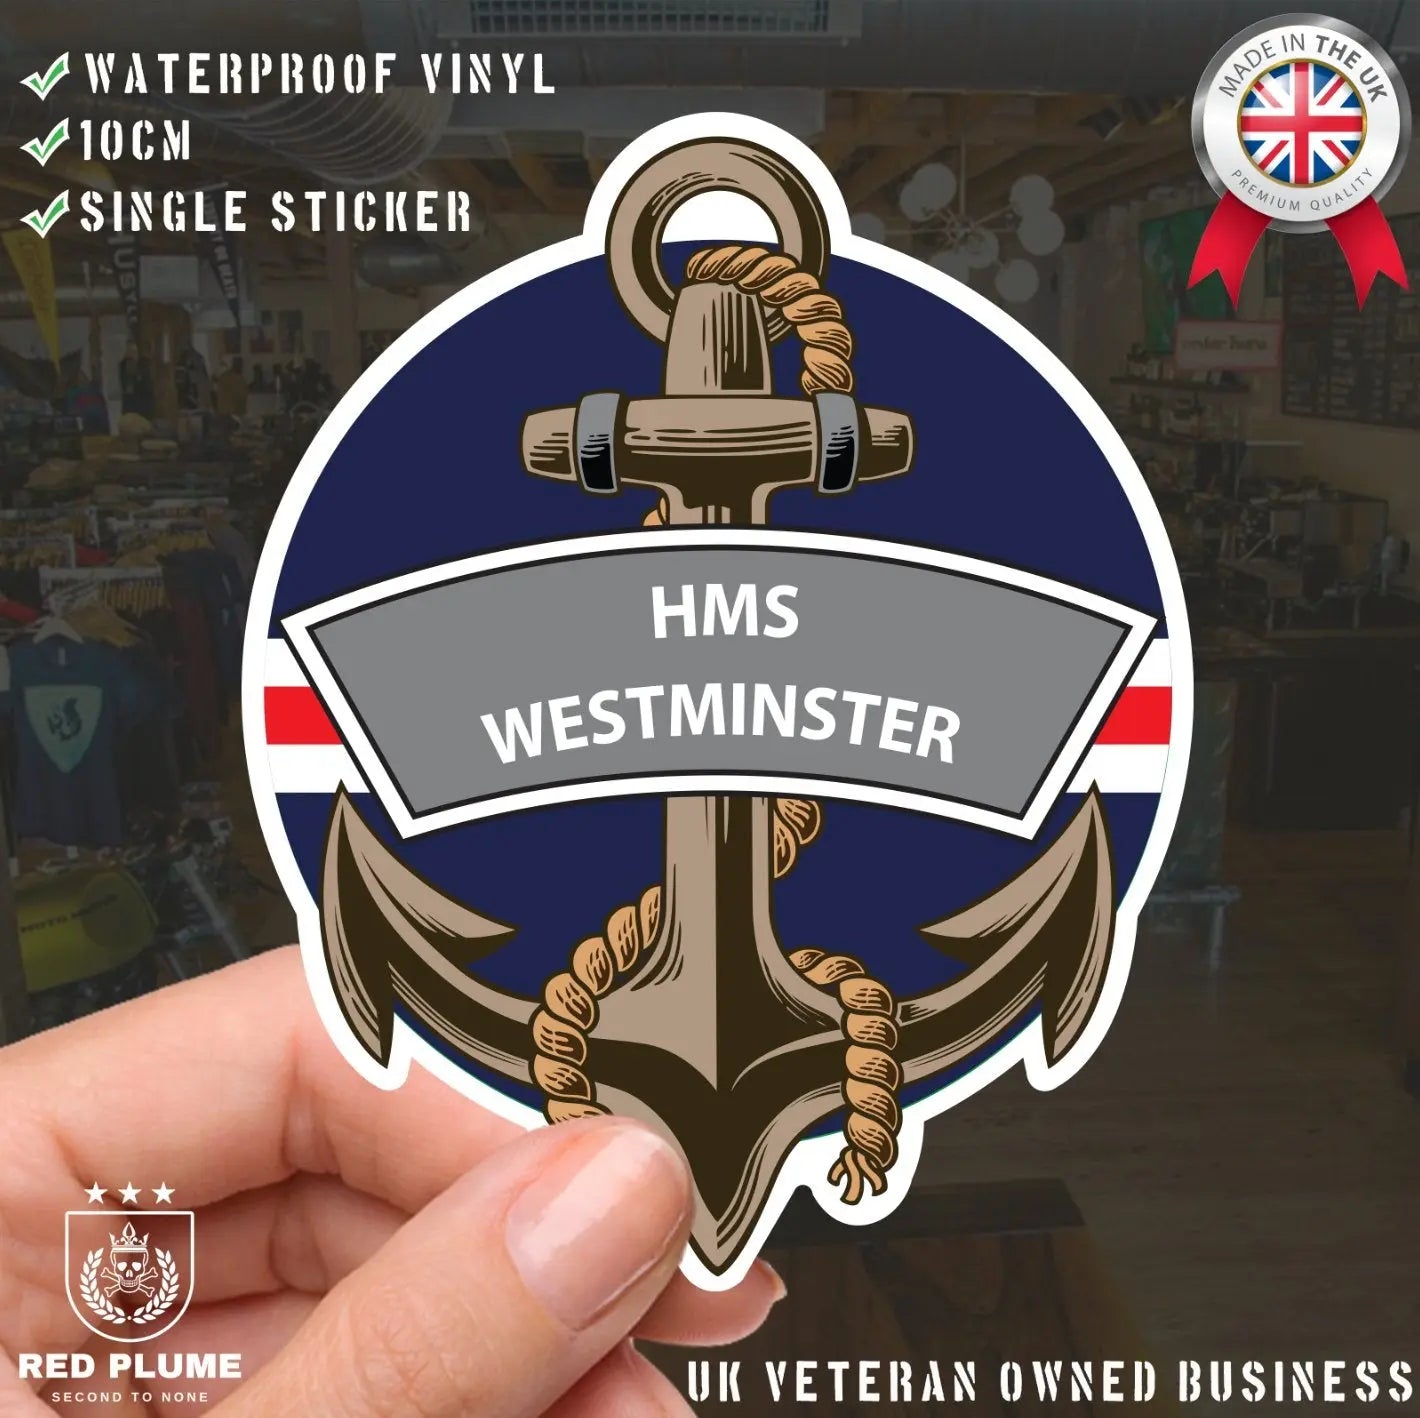 HMS Westminster Royal Navy Waterproof Vinyl Sticker - Red Plume